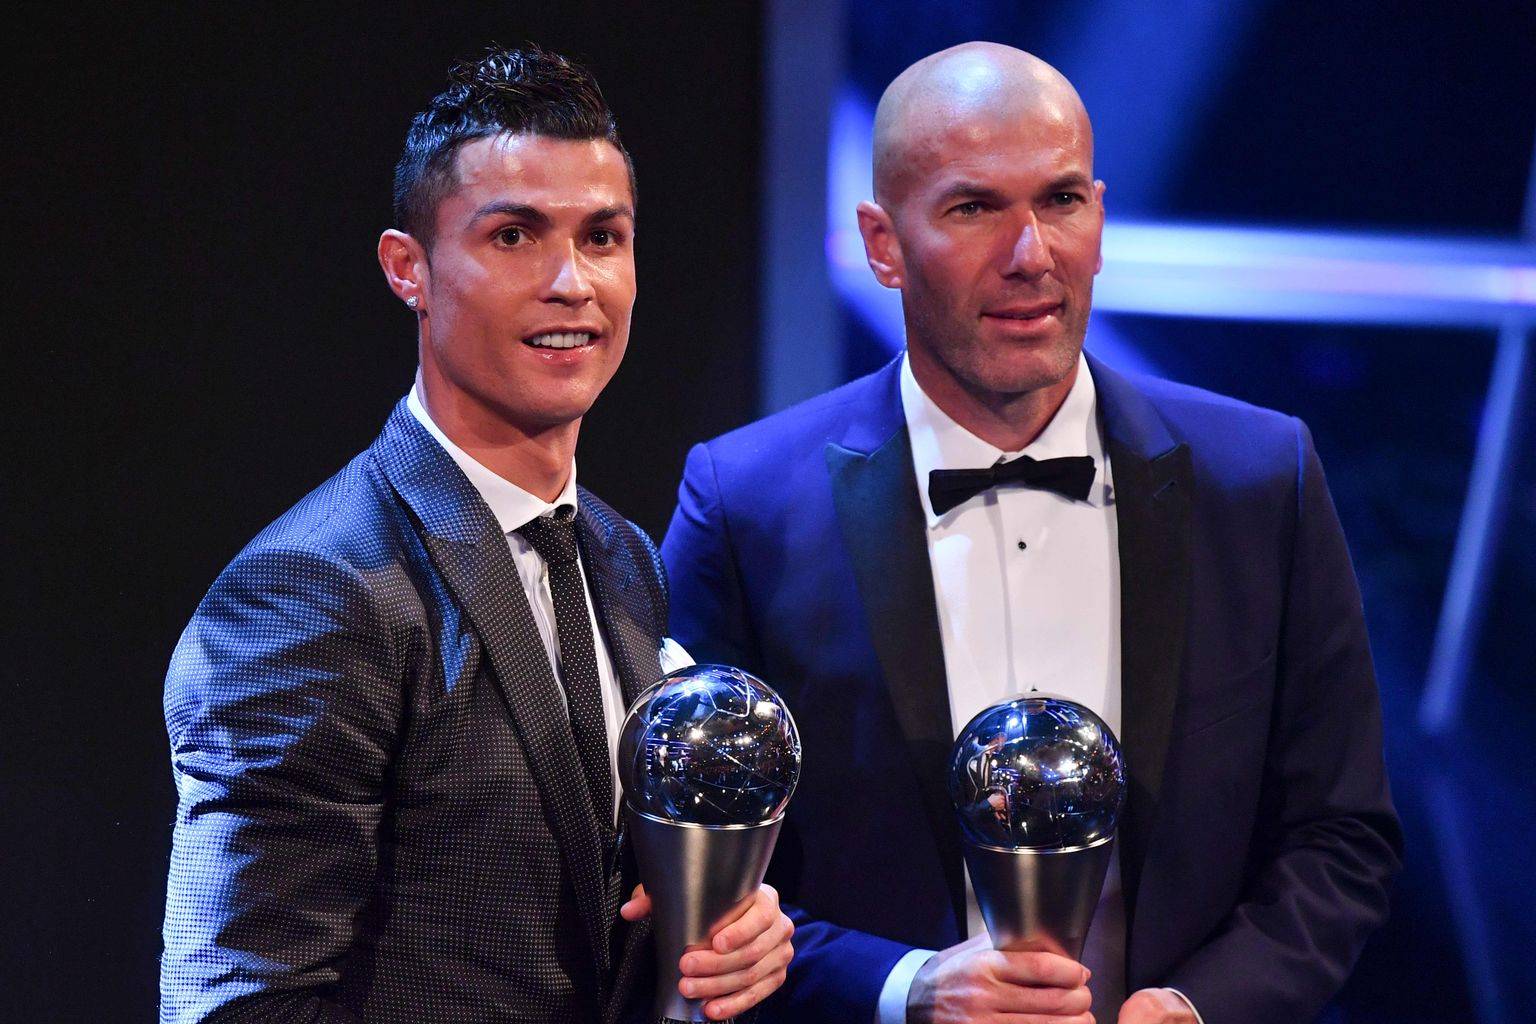 Olgugi et Cristiano Ronaldo (vasakul) ja Zinedine Zidane nimetati mullu vastavalt aasta parimaks mängijaks ja treeneriks, ripuvad  mõlema Reali-tuleviku kohal küsimärgid.